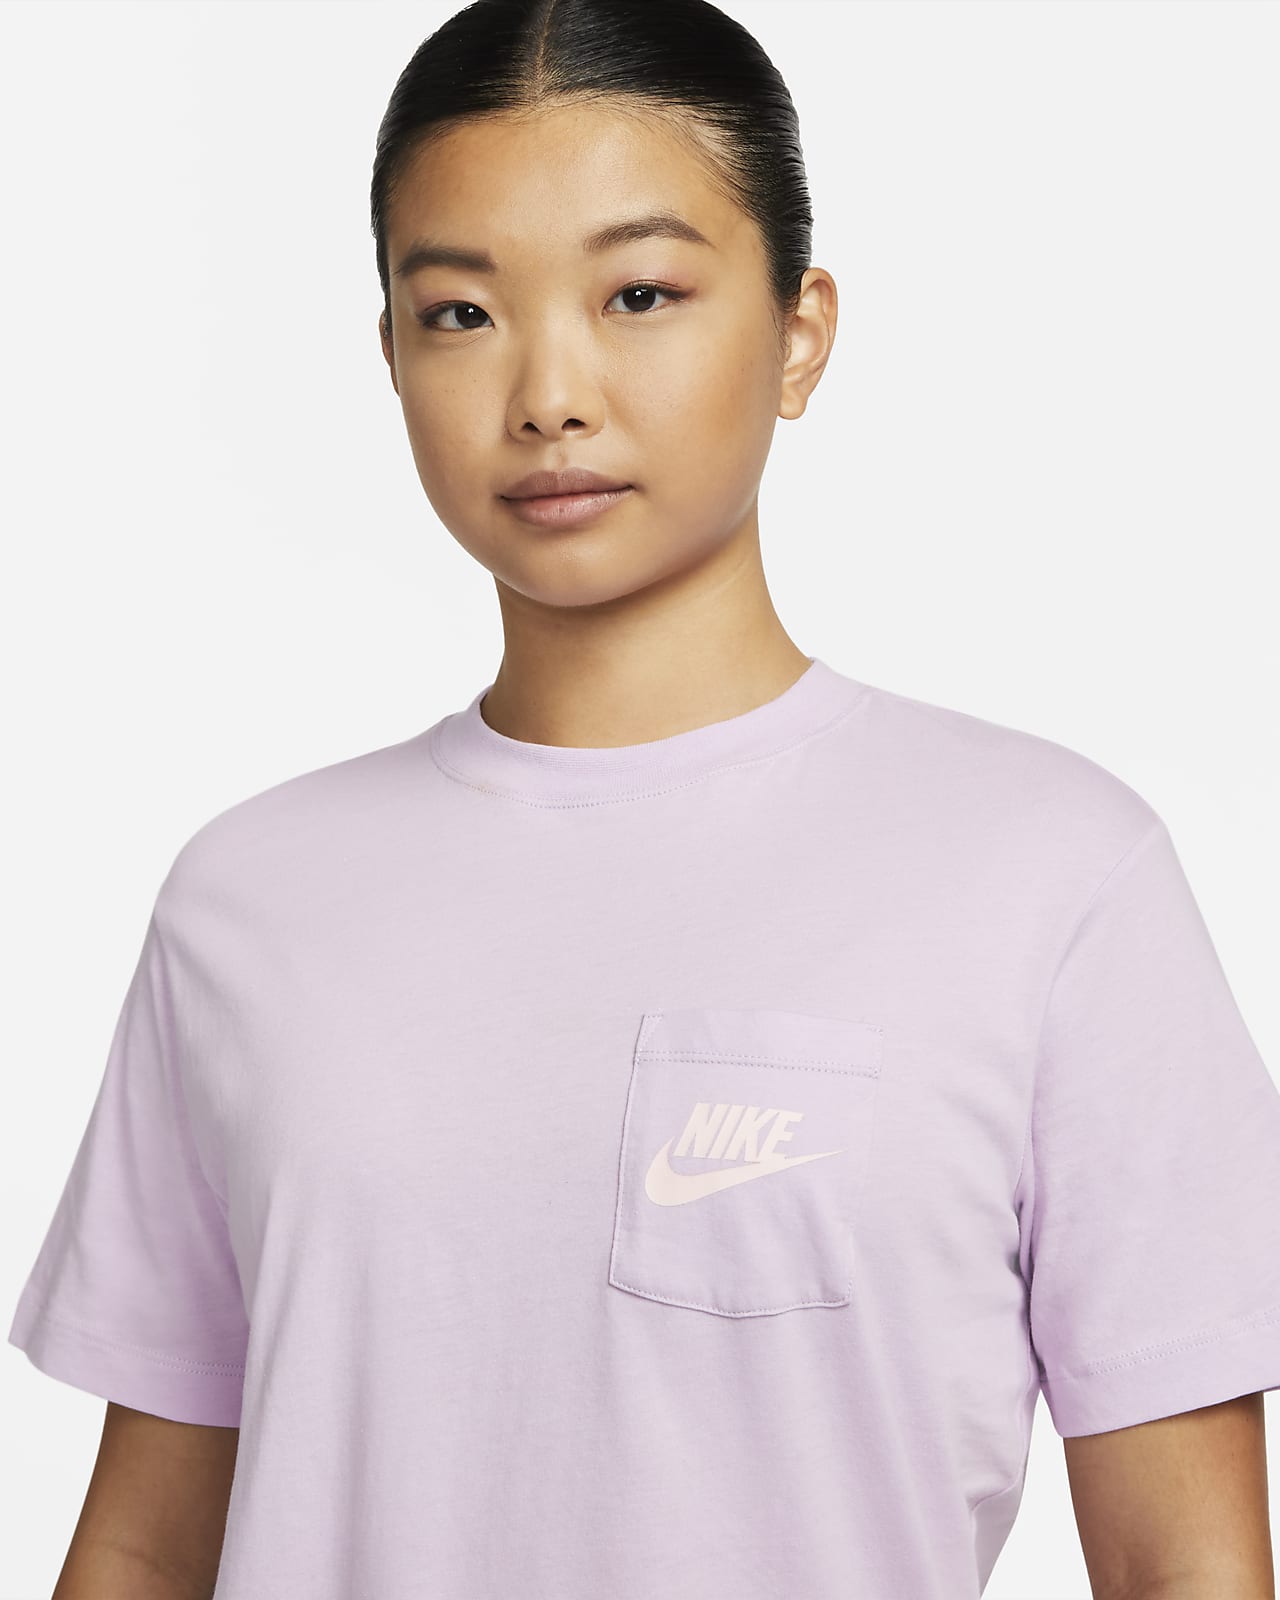 broeden genade communicatie Nike Sportswear Women's Pocket T-Shirt. Nike JP